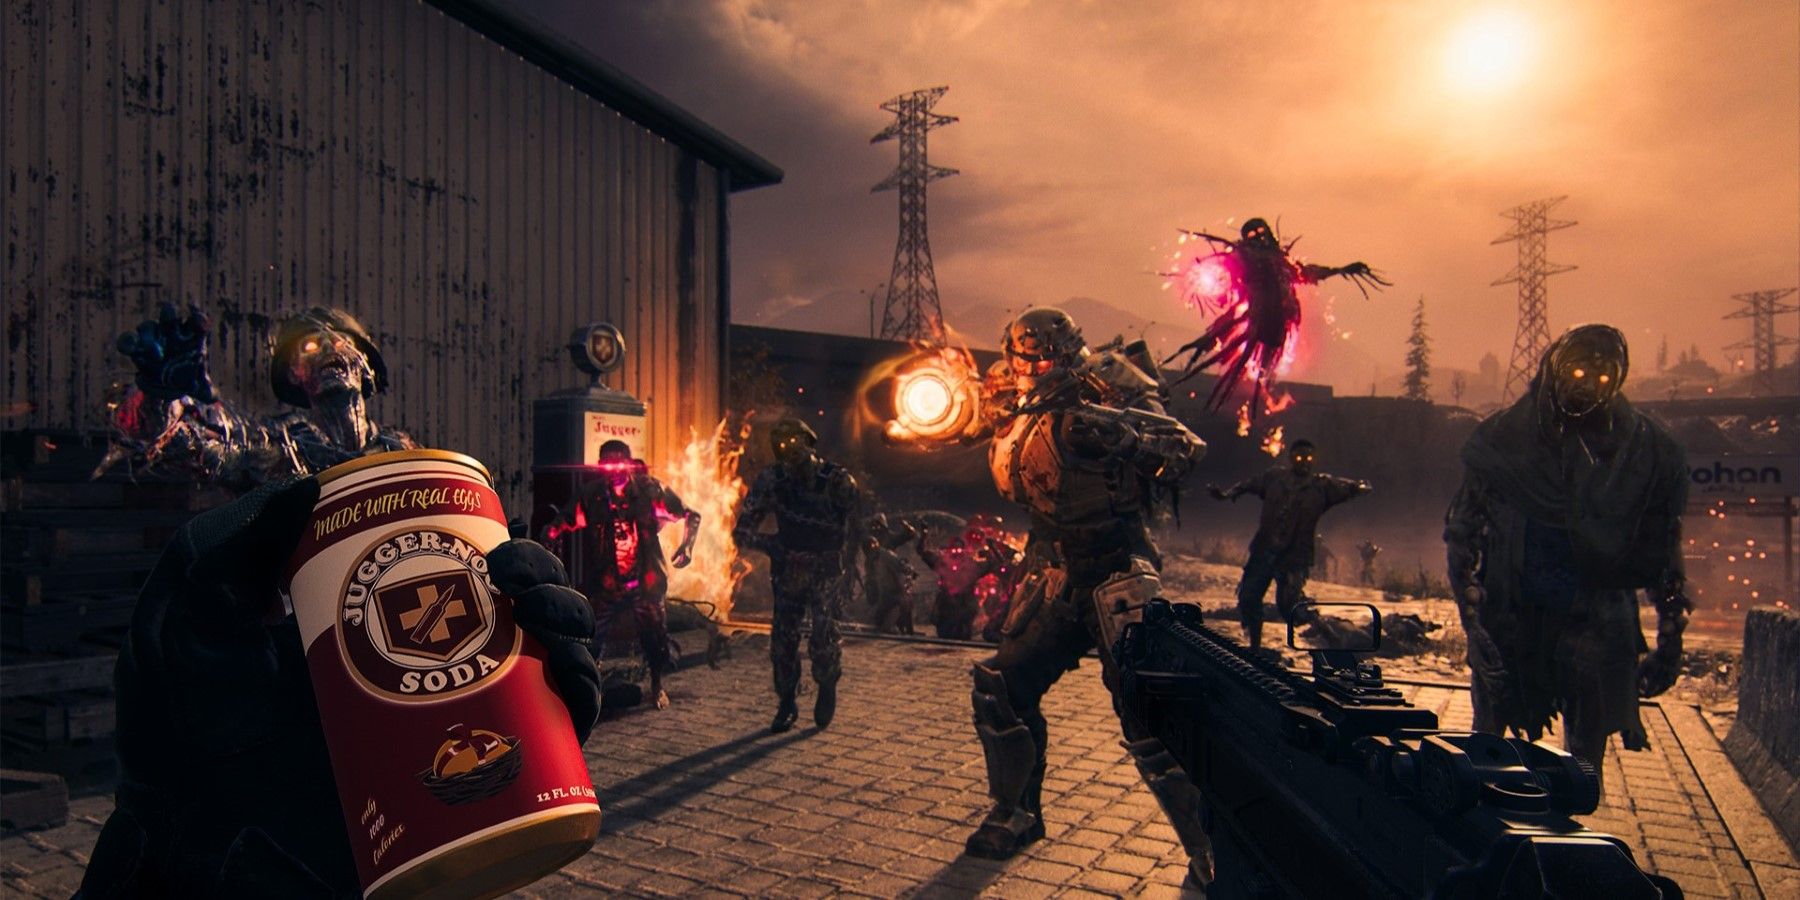 Les joueurs de Call of Duty Modern Warfare 3 Zombies souhaitent qu'une fonctionnalité de reconnexion soit ajoutée au jeu